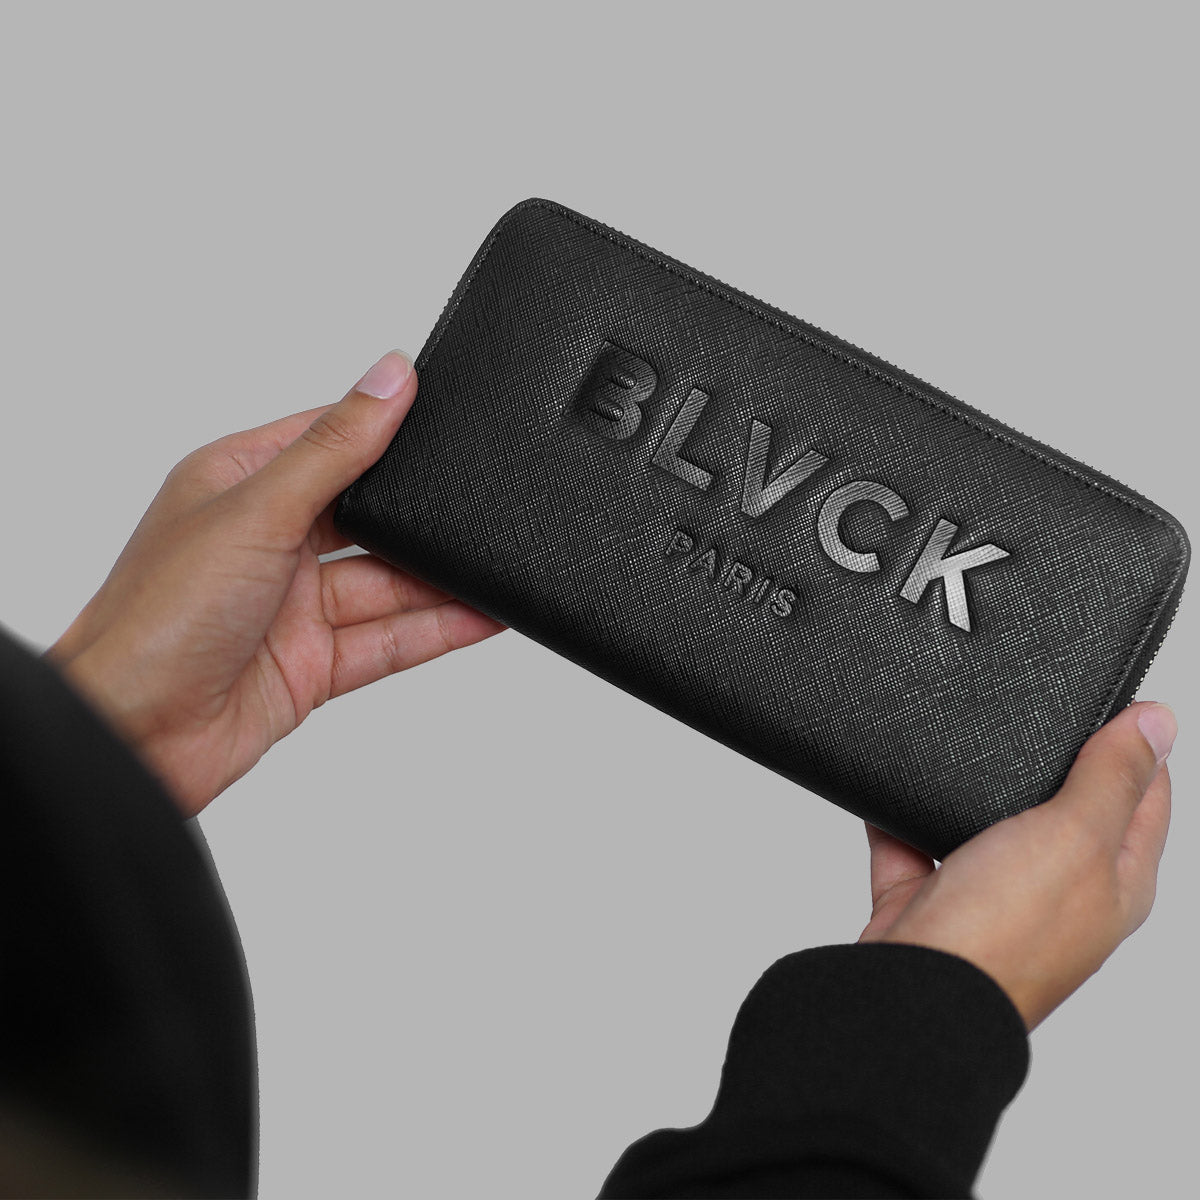 Blvck Paris Zipped Wallet